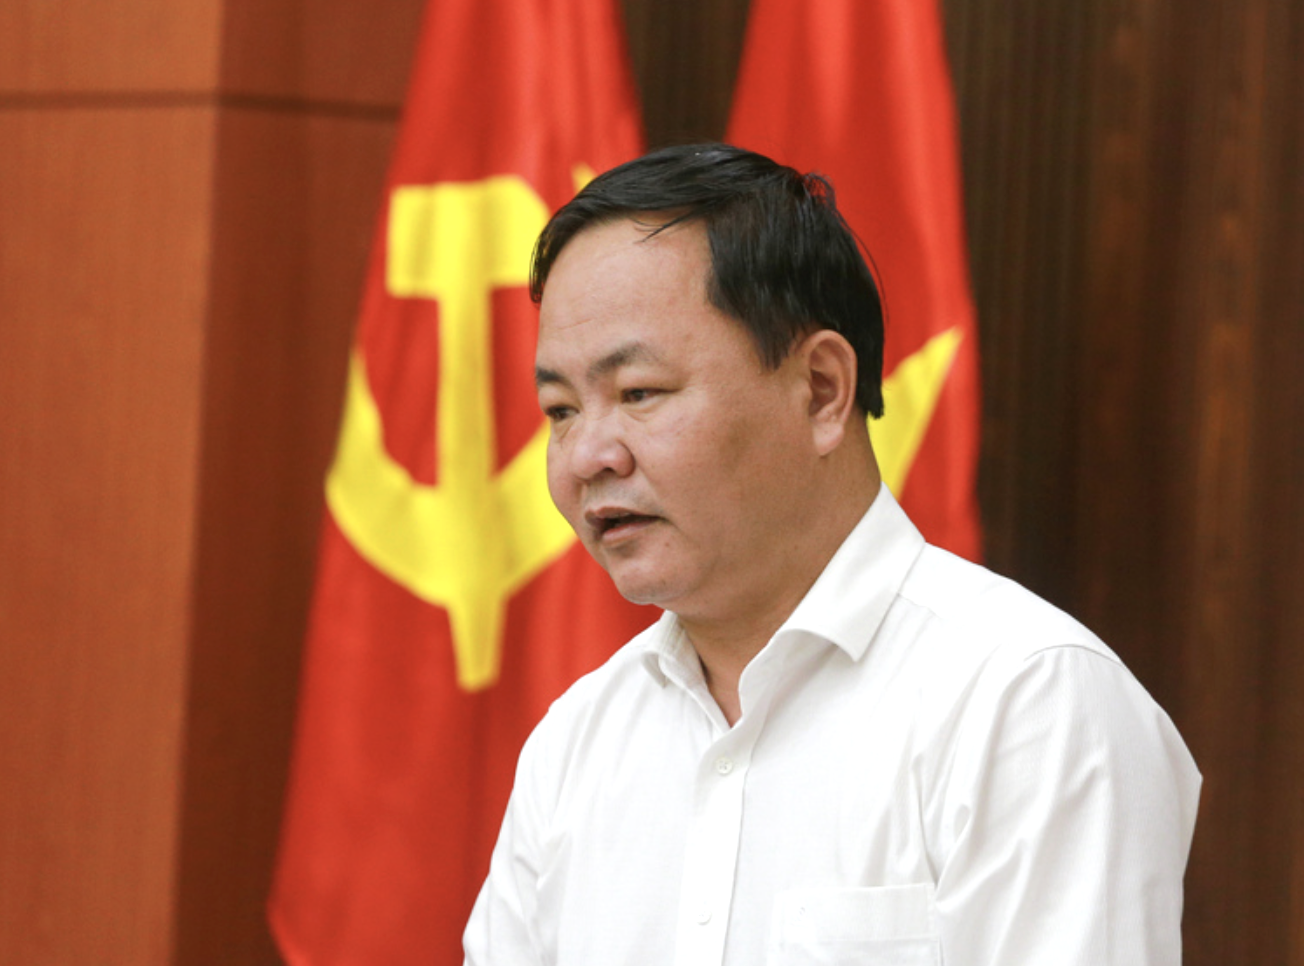 Bất động sản - Quảng Nam: Các bên cần phối hợp để đẩy nhanh tiến độ 3 dự án của Bách Đạt An